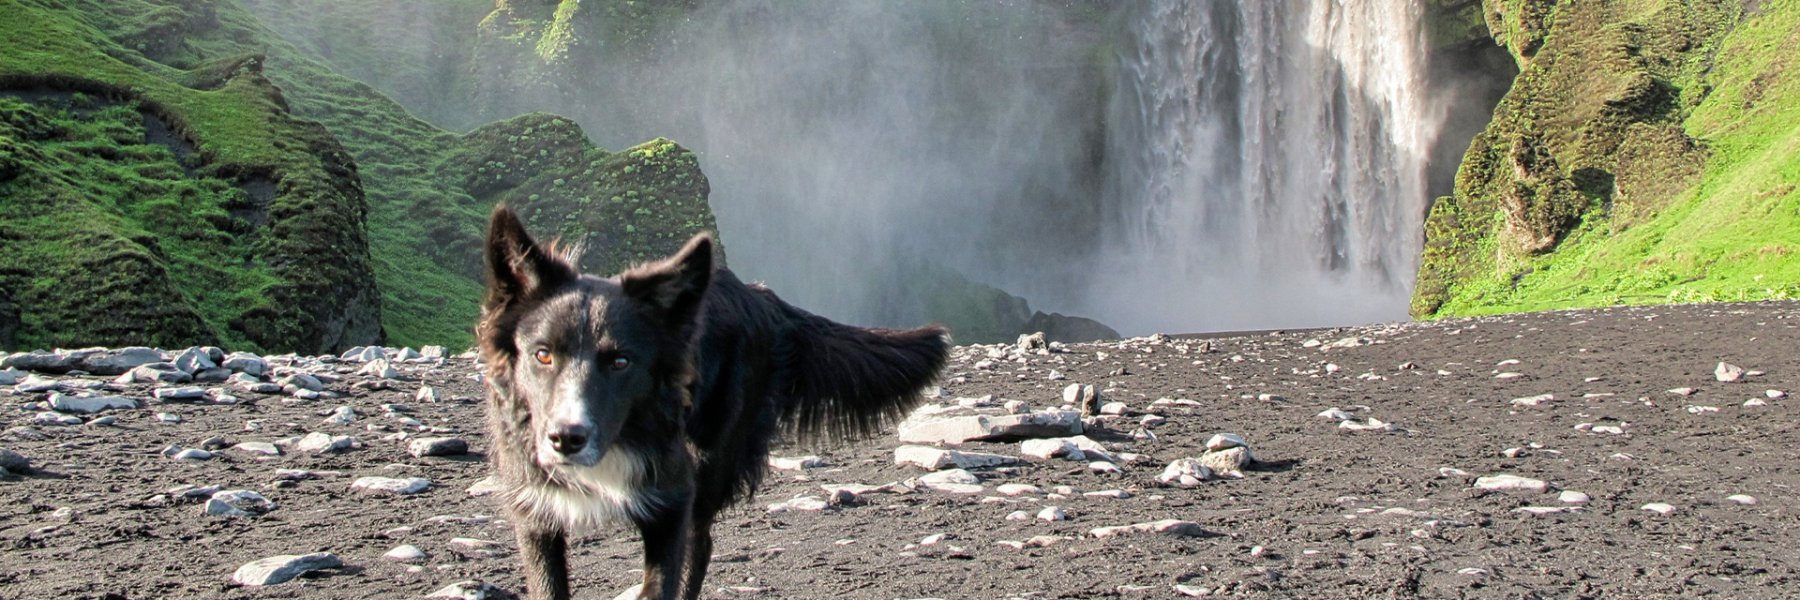 Ferienhausurlaub mit Hund auf Island 